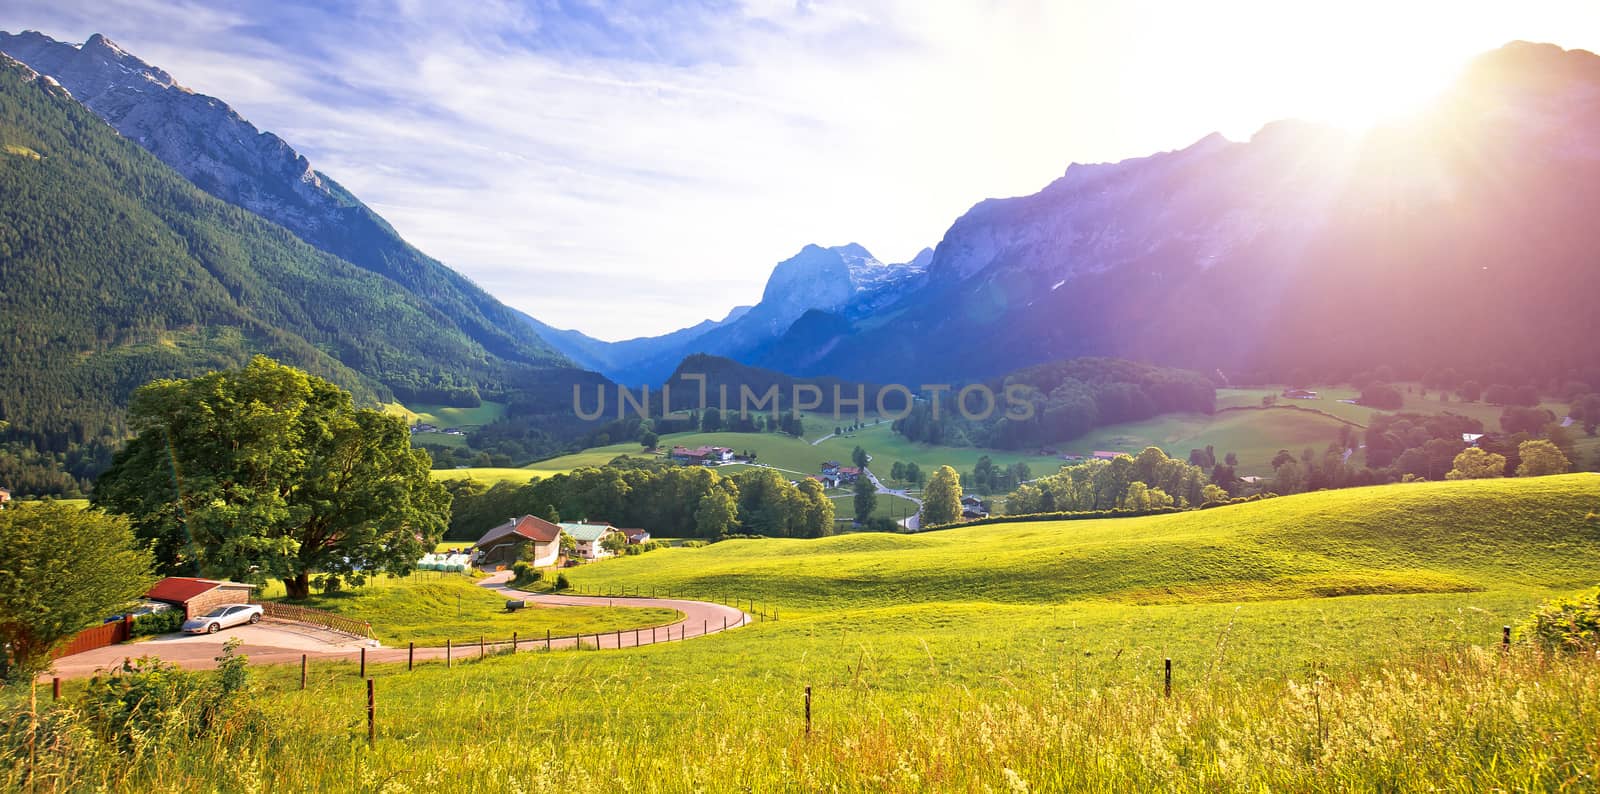 Ramsau valley in Berchtesgaden Alpine region landscape panoramic by xbrchx